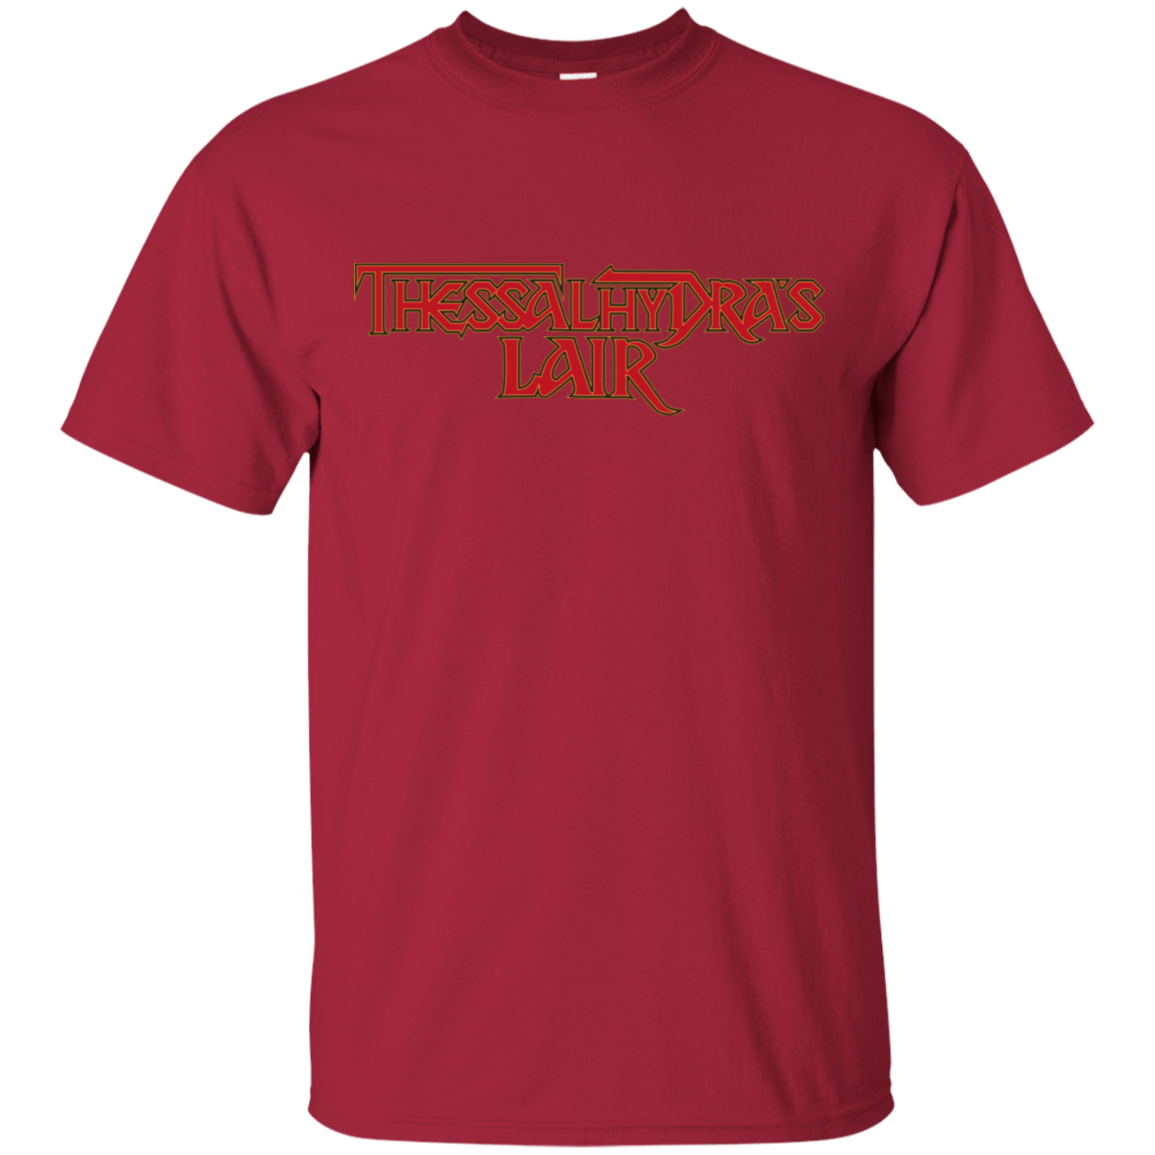 T-Shirts Cardinal / S Thessalhydras Lair T-Shirt